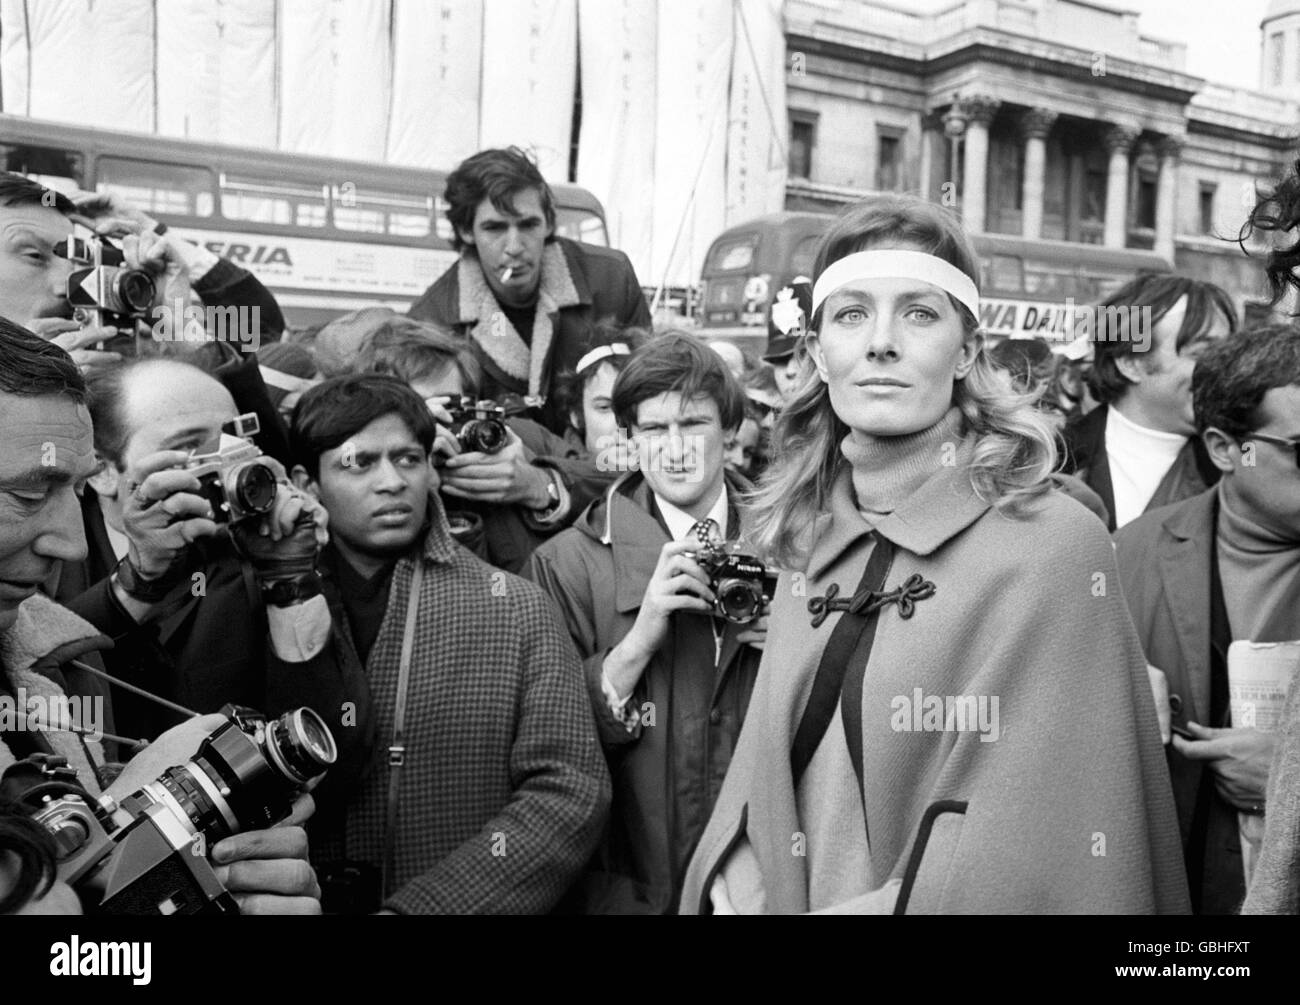 Die Schauspielerin Vanessa Redgrave trägt eine weiße Trauerband um den Kopf, als sie sich den Anti-Vietnam-Kriegsprotesten auf dem Trafalgar Square anschließt. Sie gehörte zu den Rednern, die eine auf fast 10,000 Personen geschätzte Menge ansprachen. Stockfoto